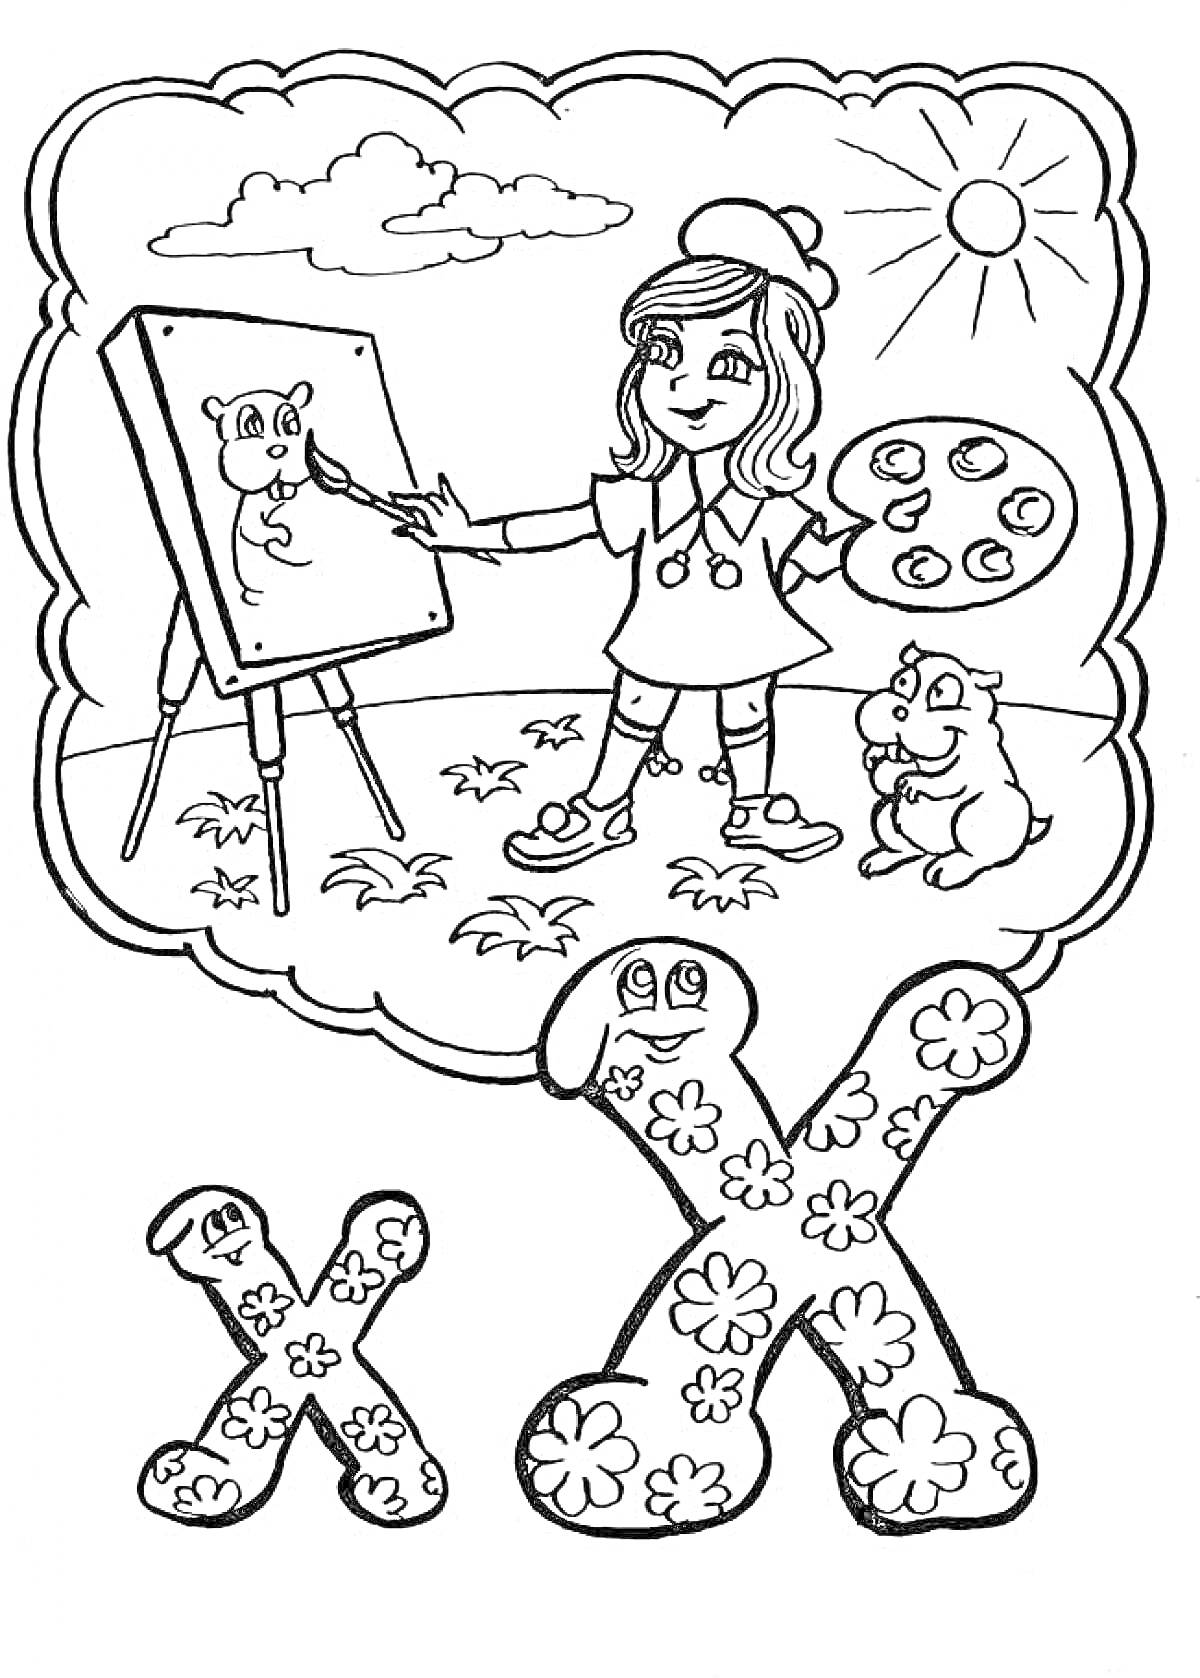 Девочка рисует на мольберте с буквой Х и собачкой